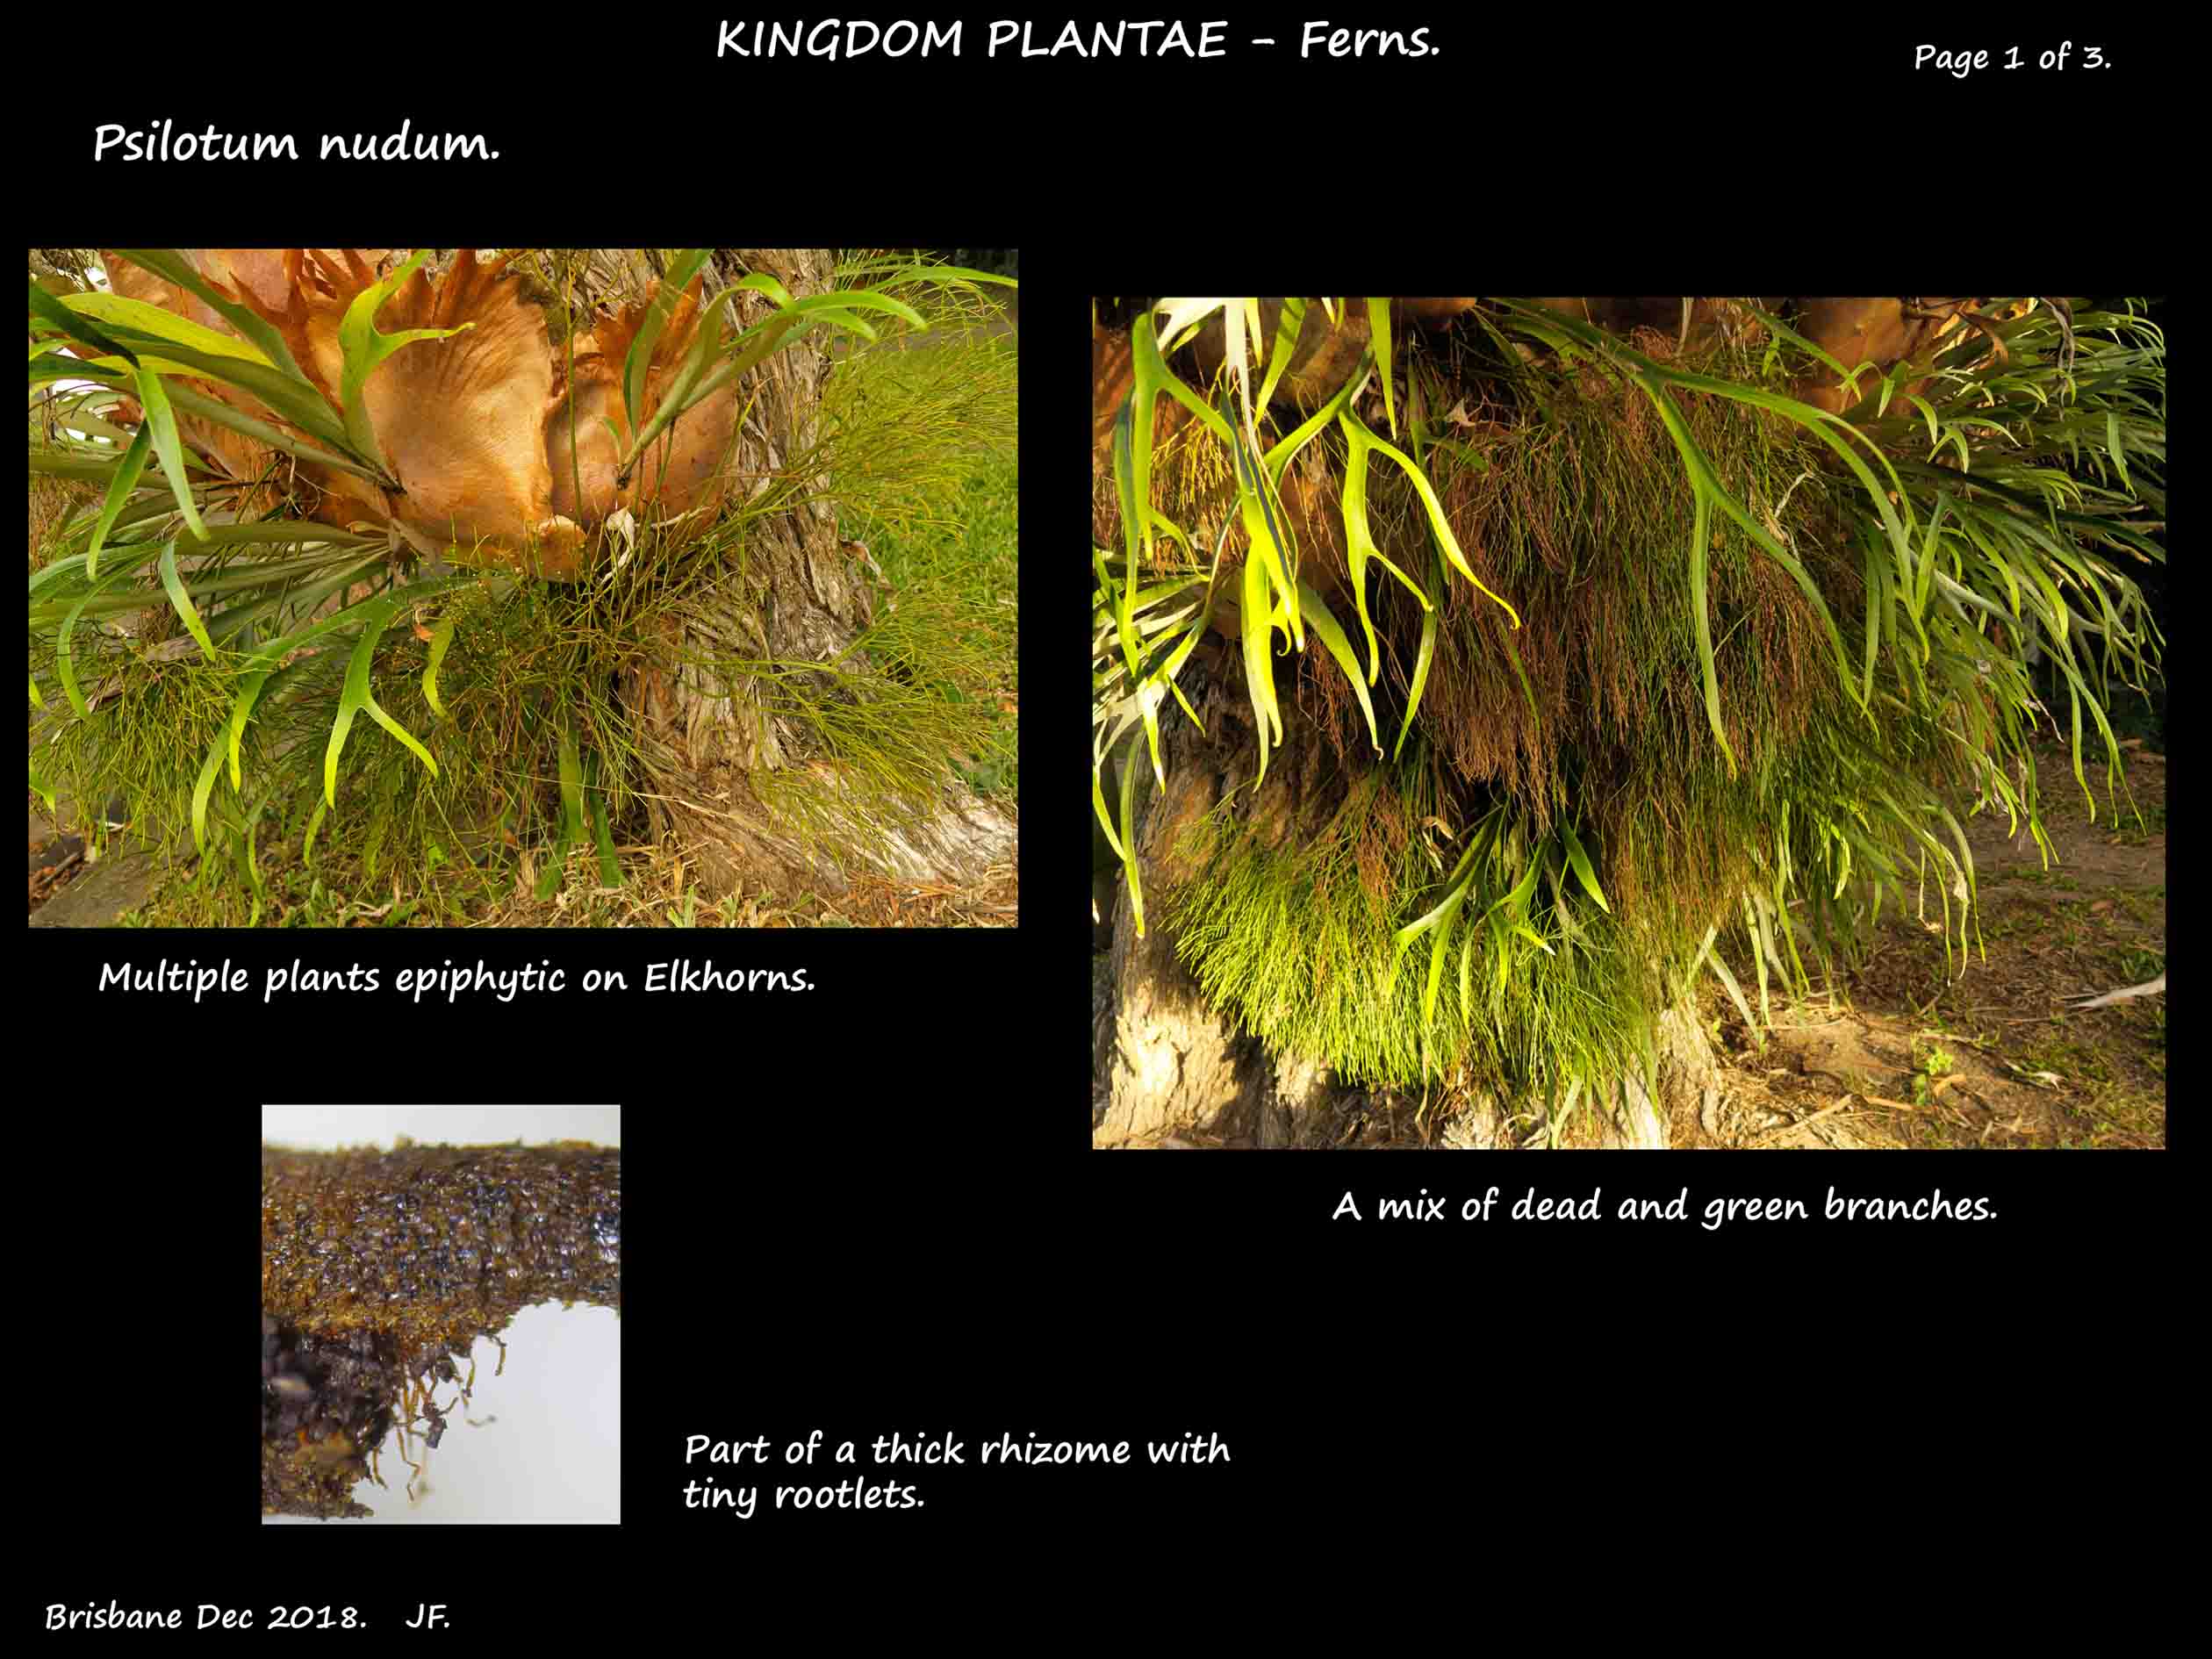 1 Psilotum nudum plants